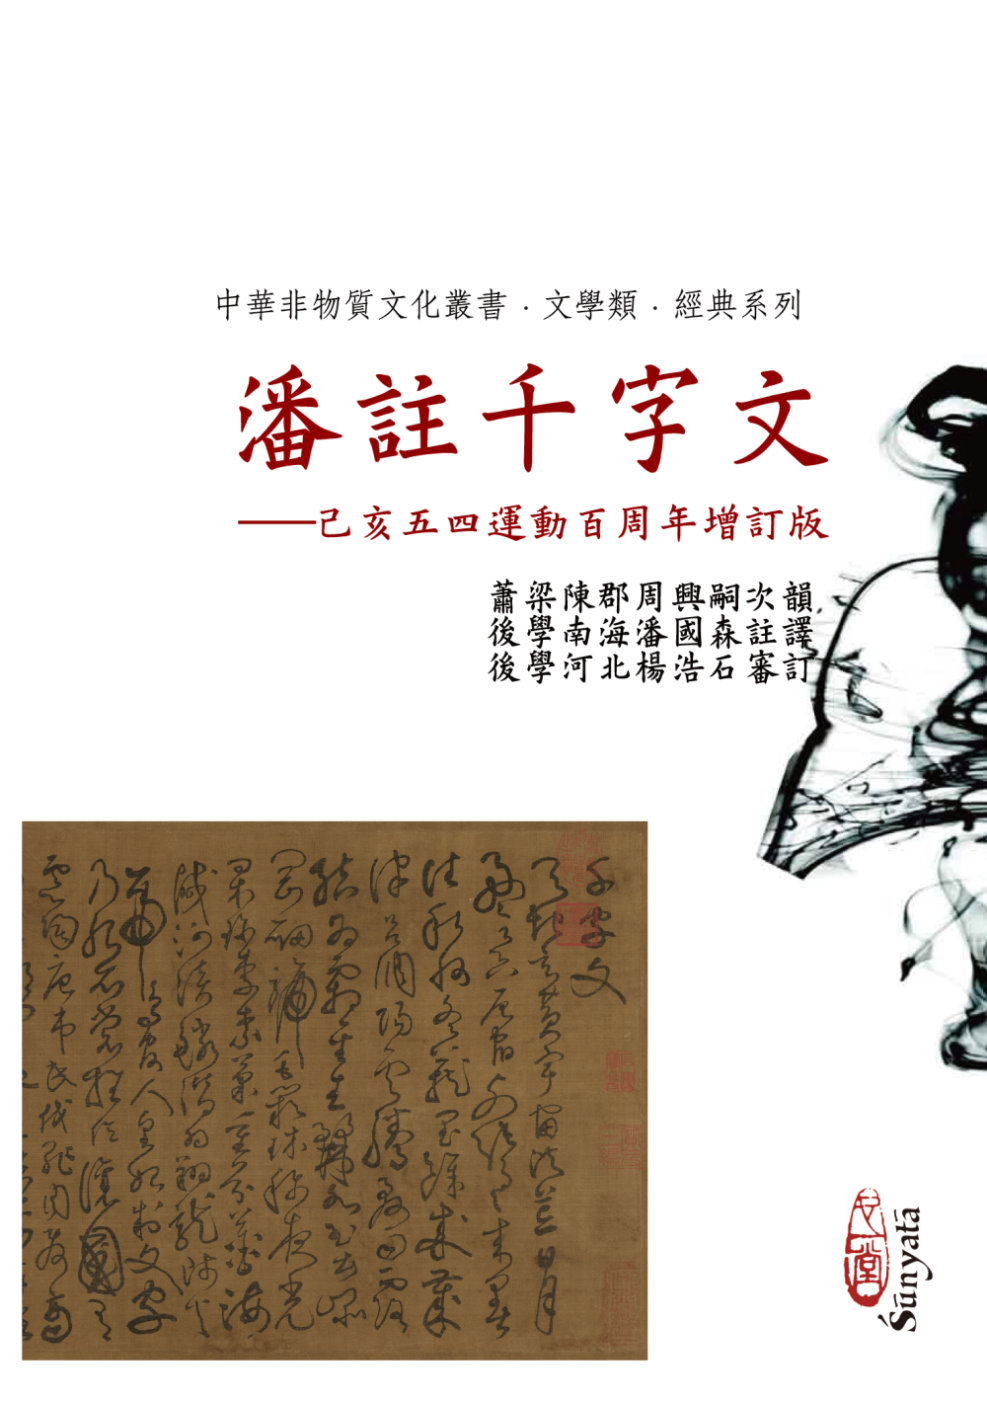 潘註千字文——己亥五四運動百周年增訂版